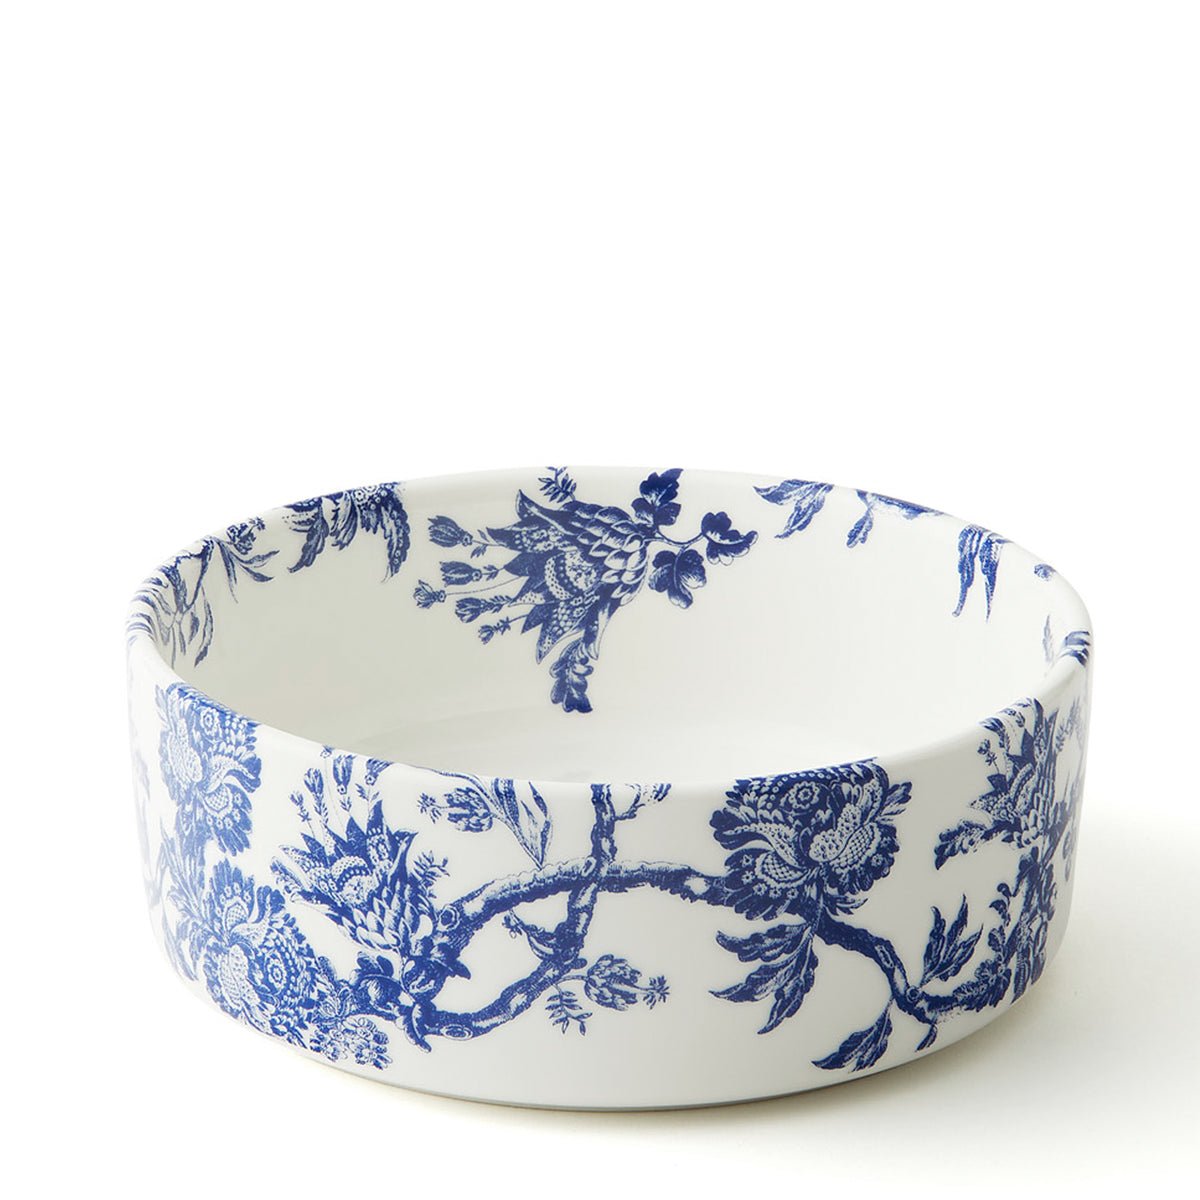 Arcadia blue and white premium porcelain medium pet bowl from Caskata